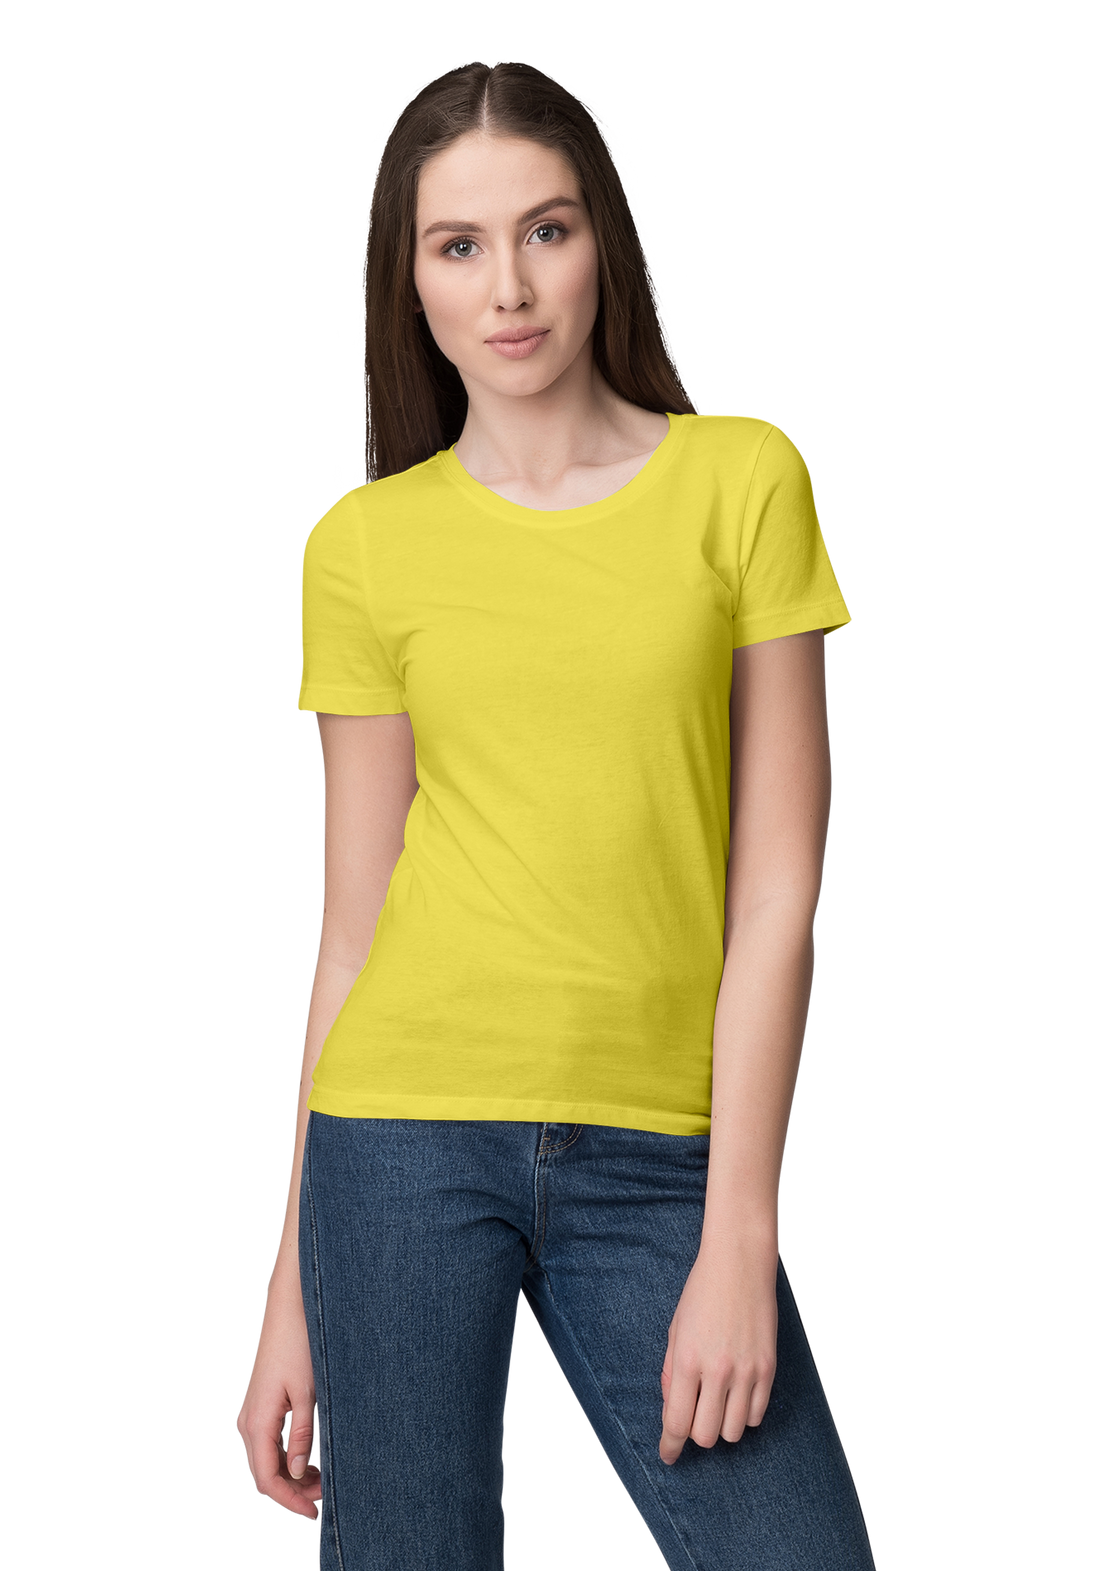 Unisex Basic Plain Yellow T-shirt